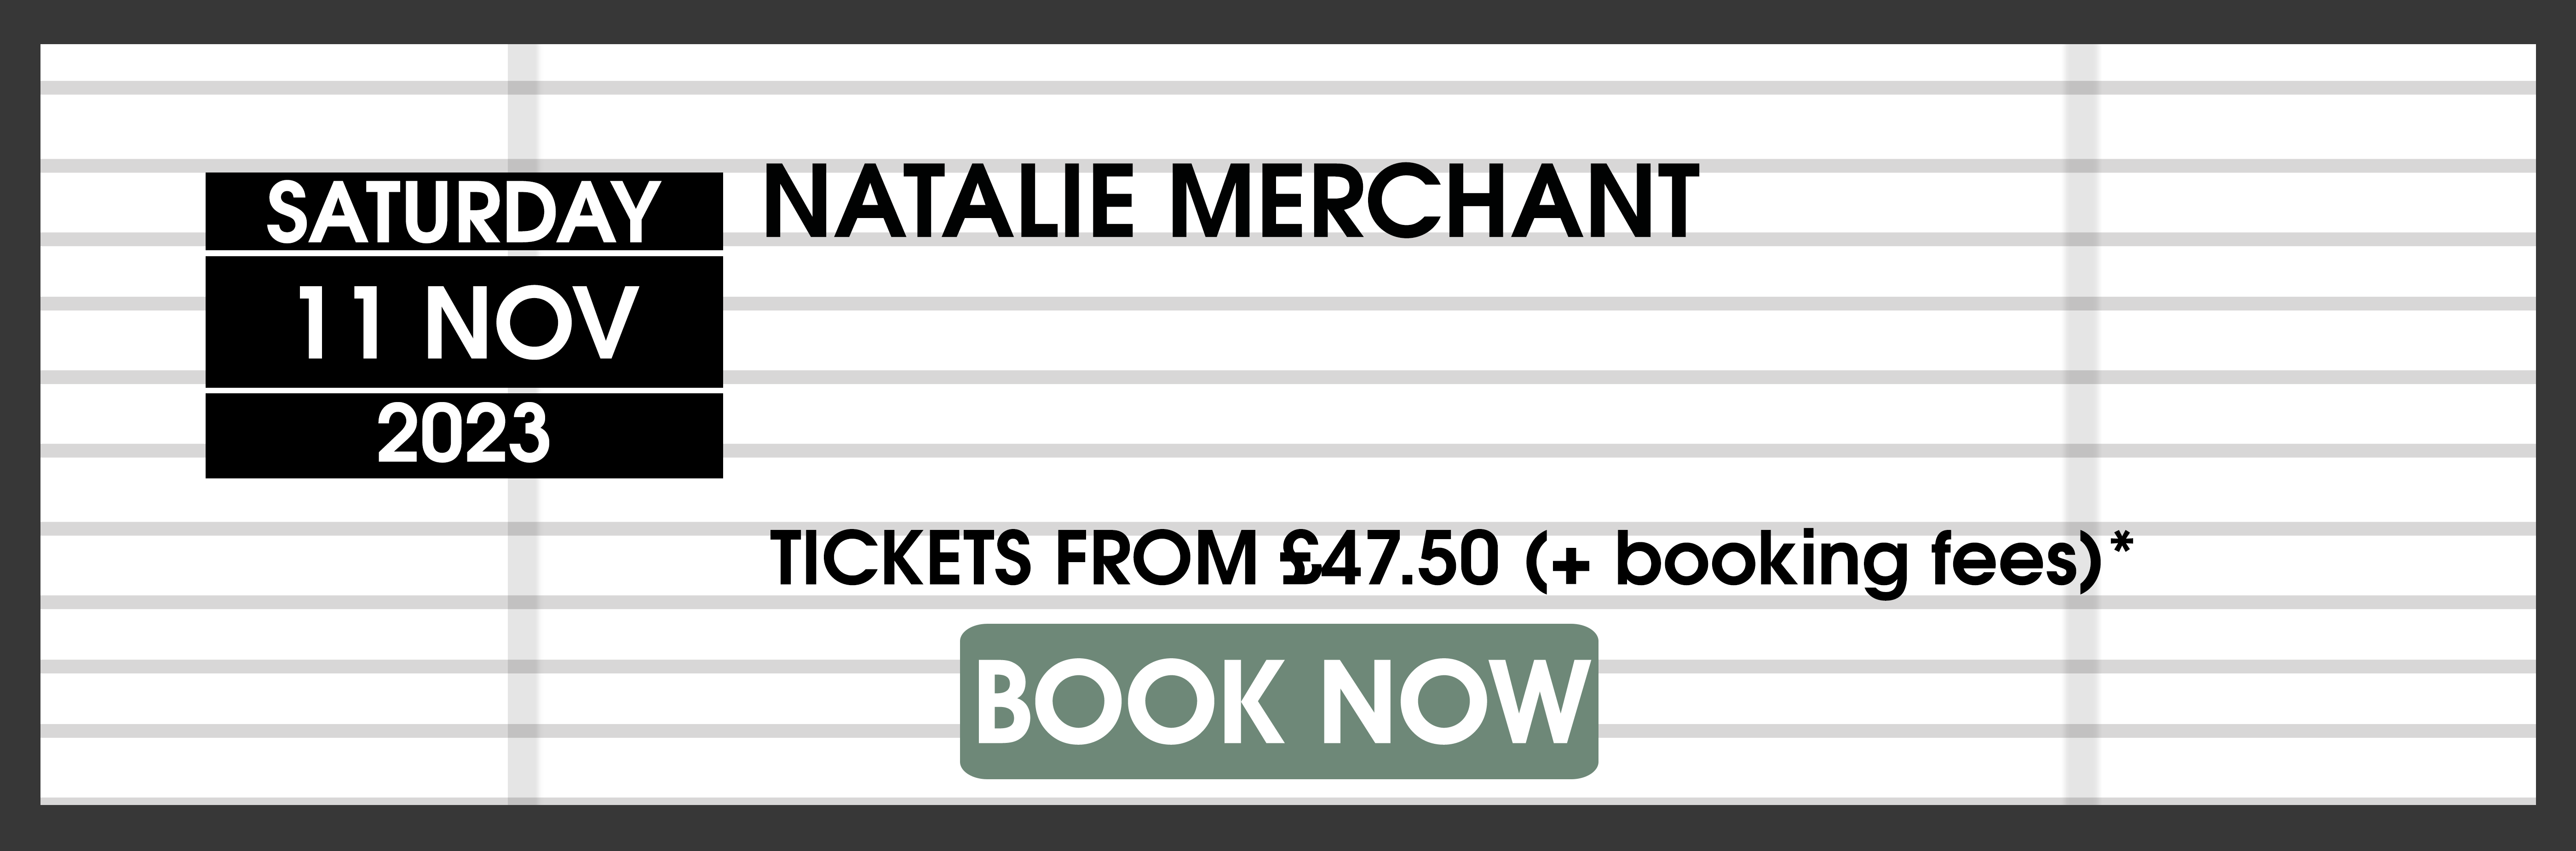 23.11.11 Natalie Merchant BOOK